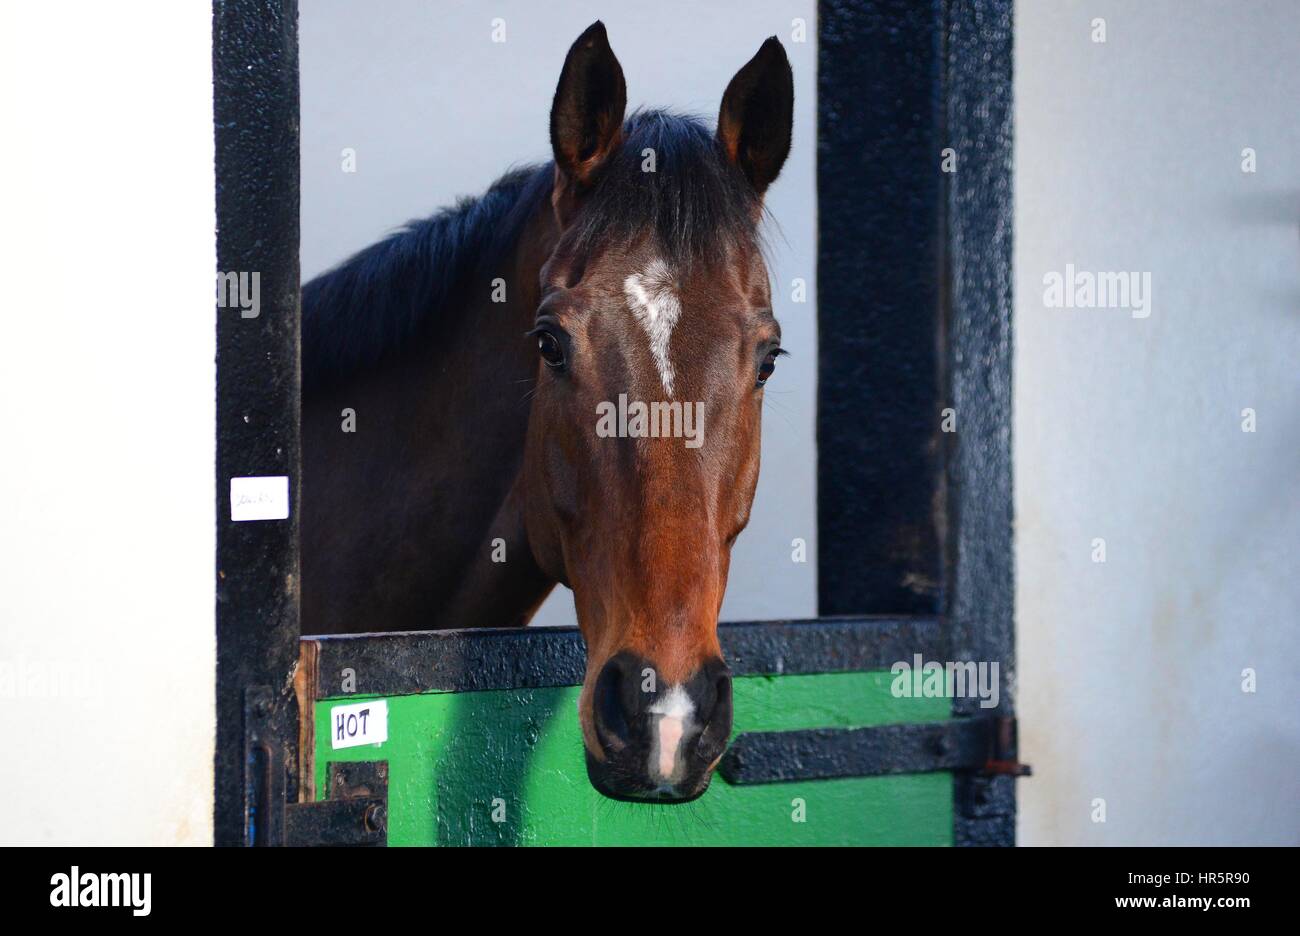 Douvan dans son stable au cours d'une visite à Willie Mullins' d'équitation à Closutton, Carlow, Irlande. Banque D'Images